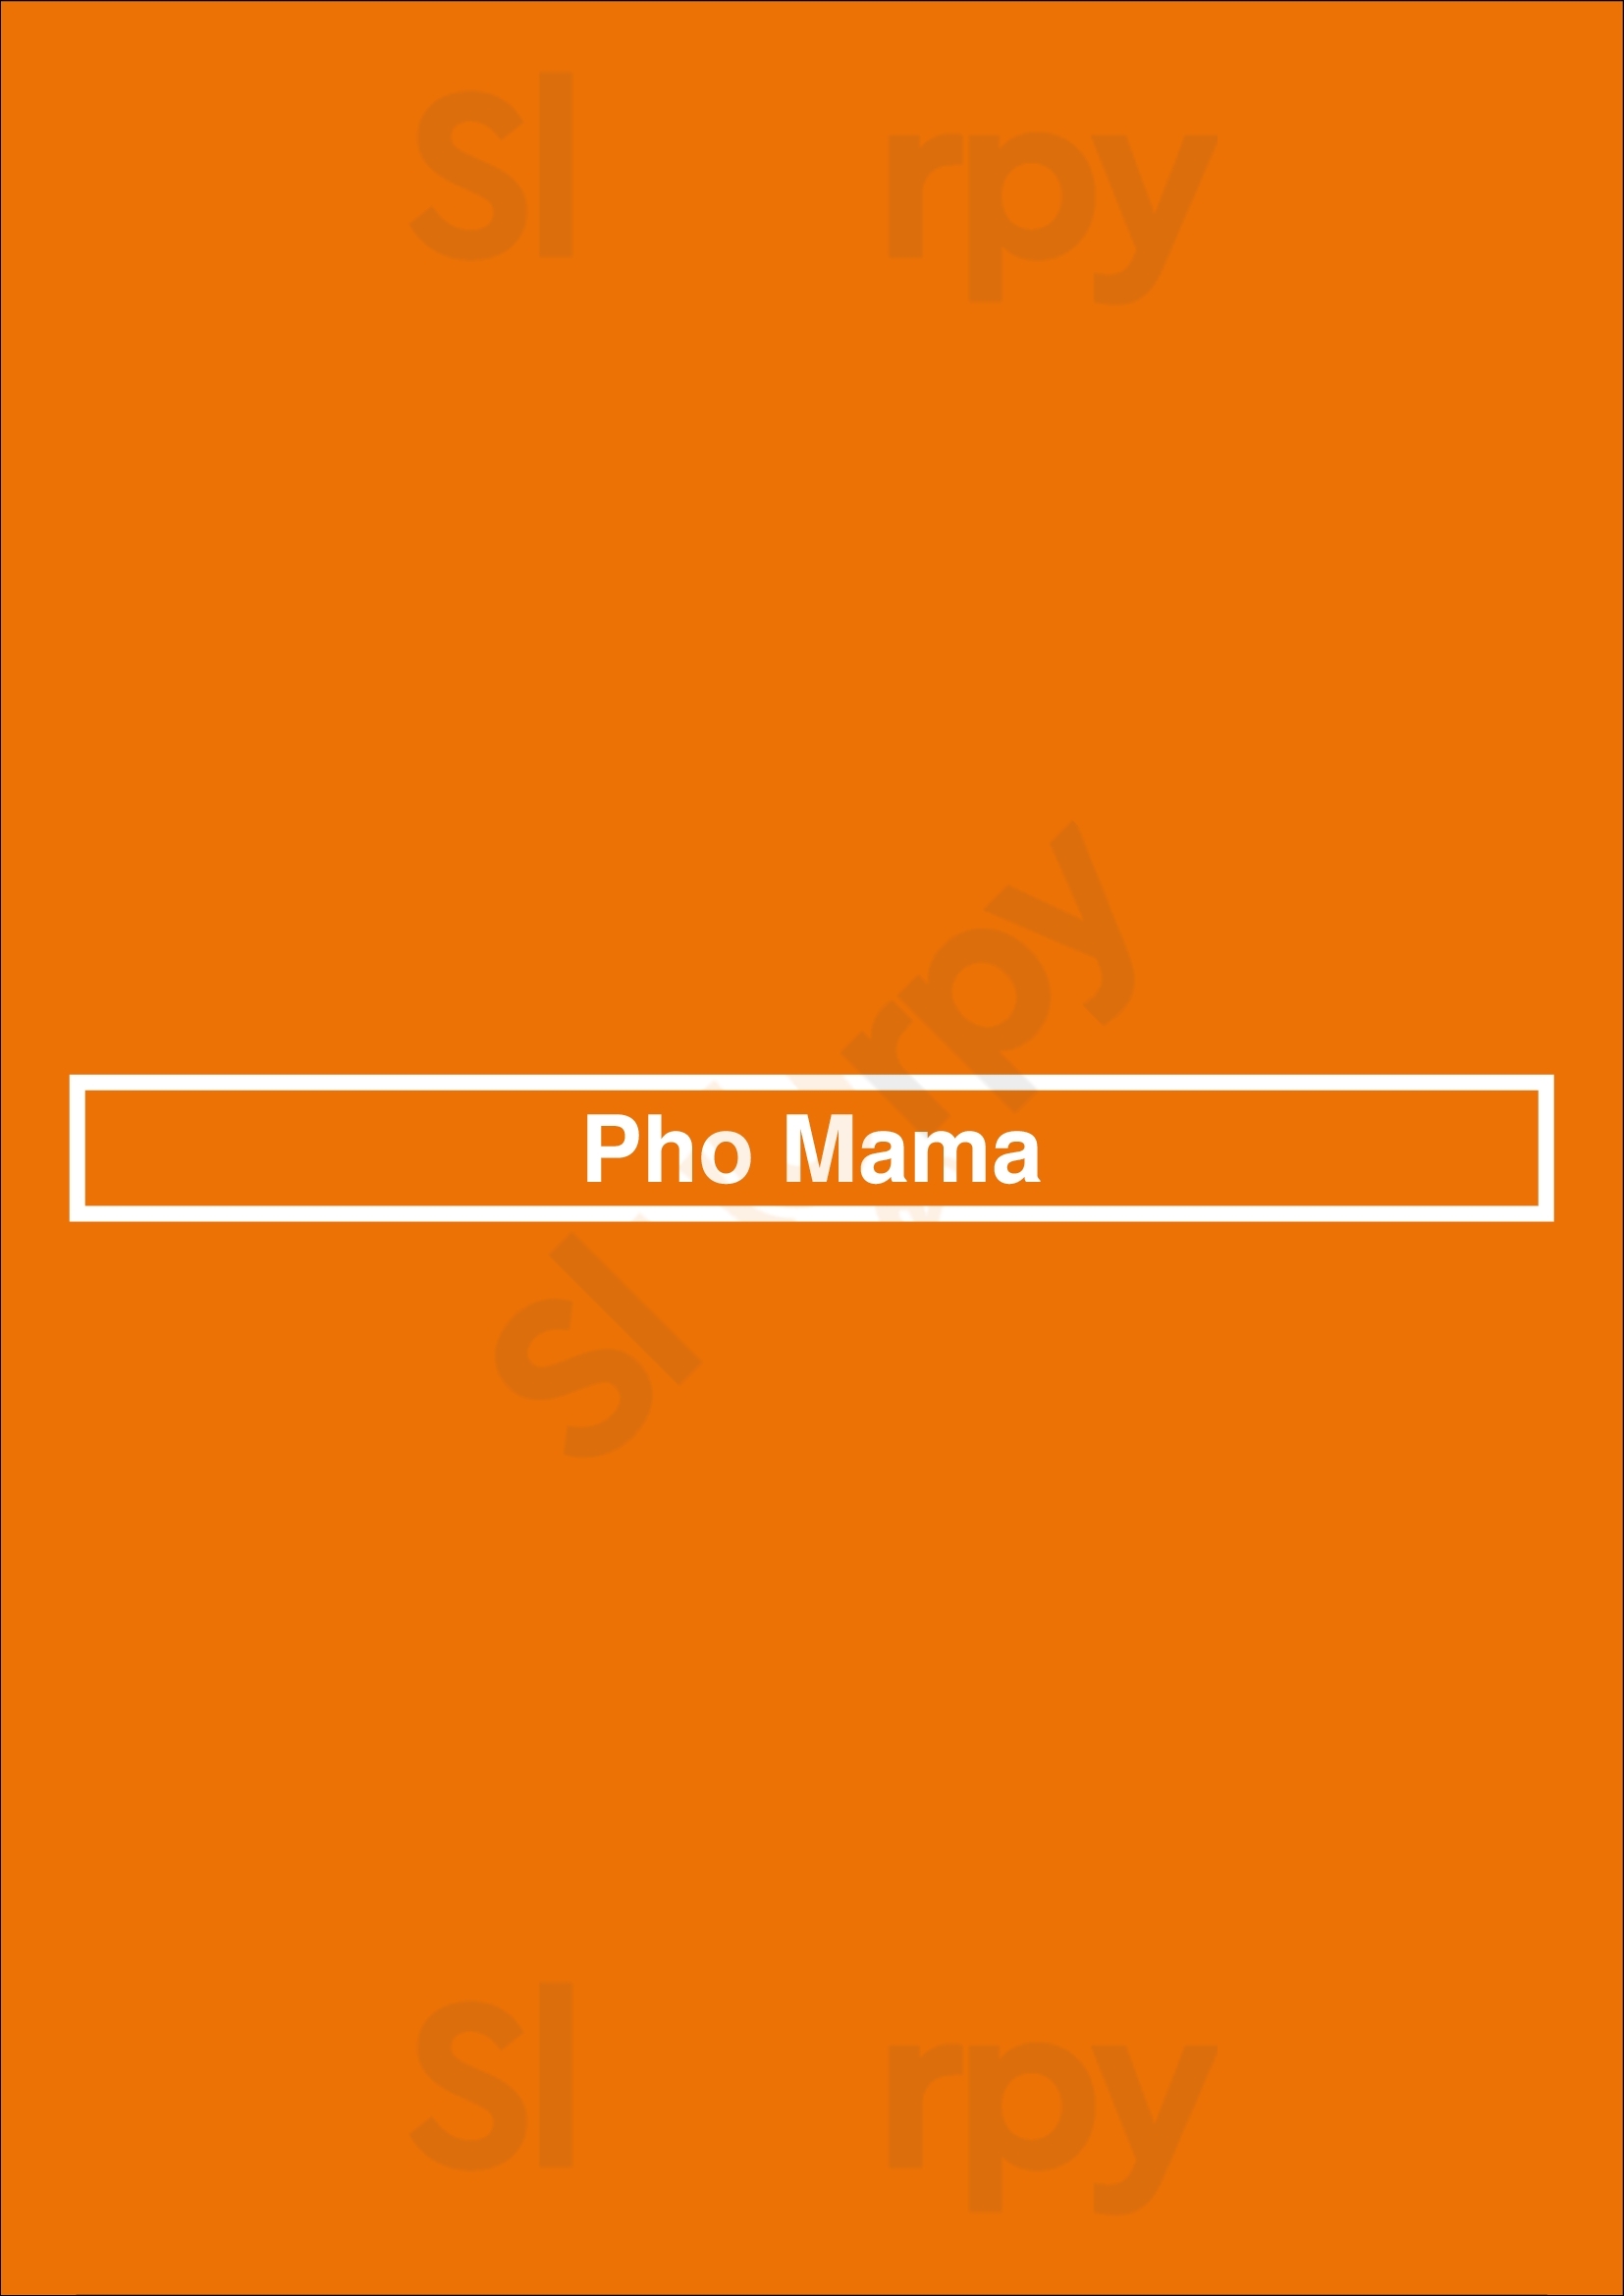 Pho Mama Oakville Menu - 1